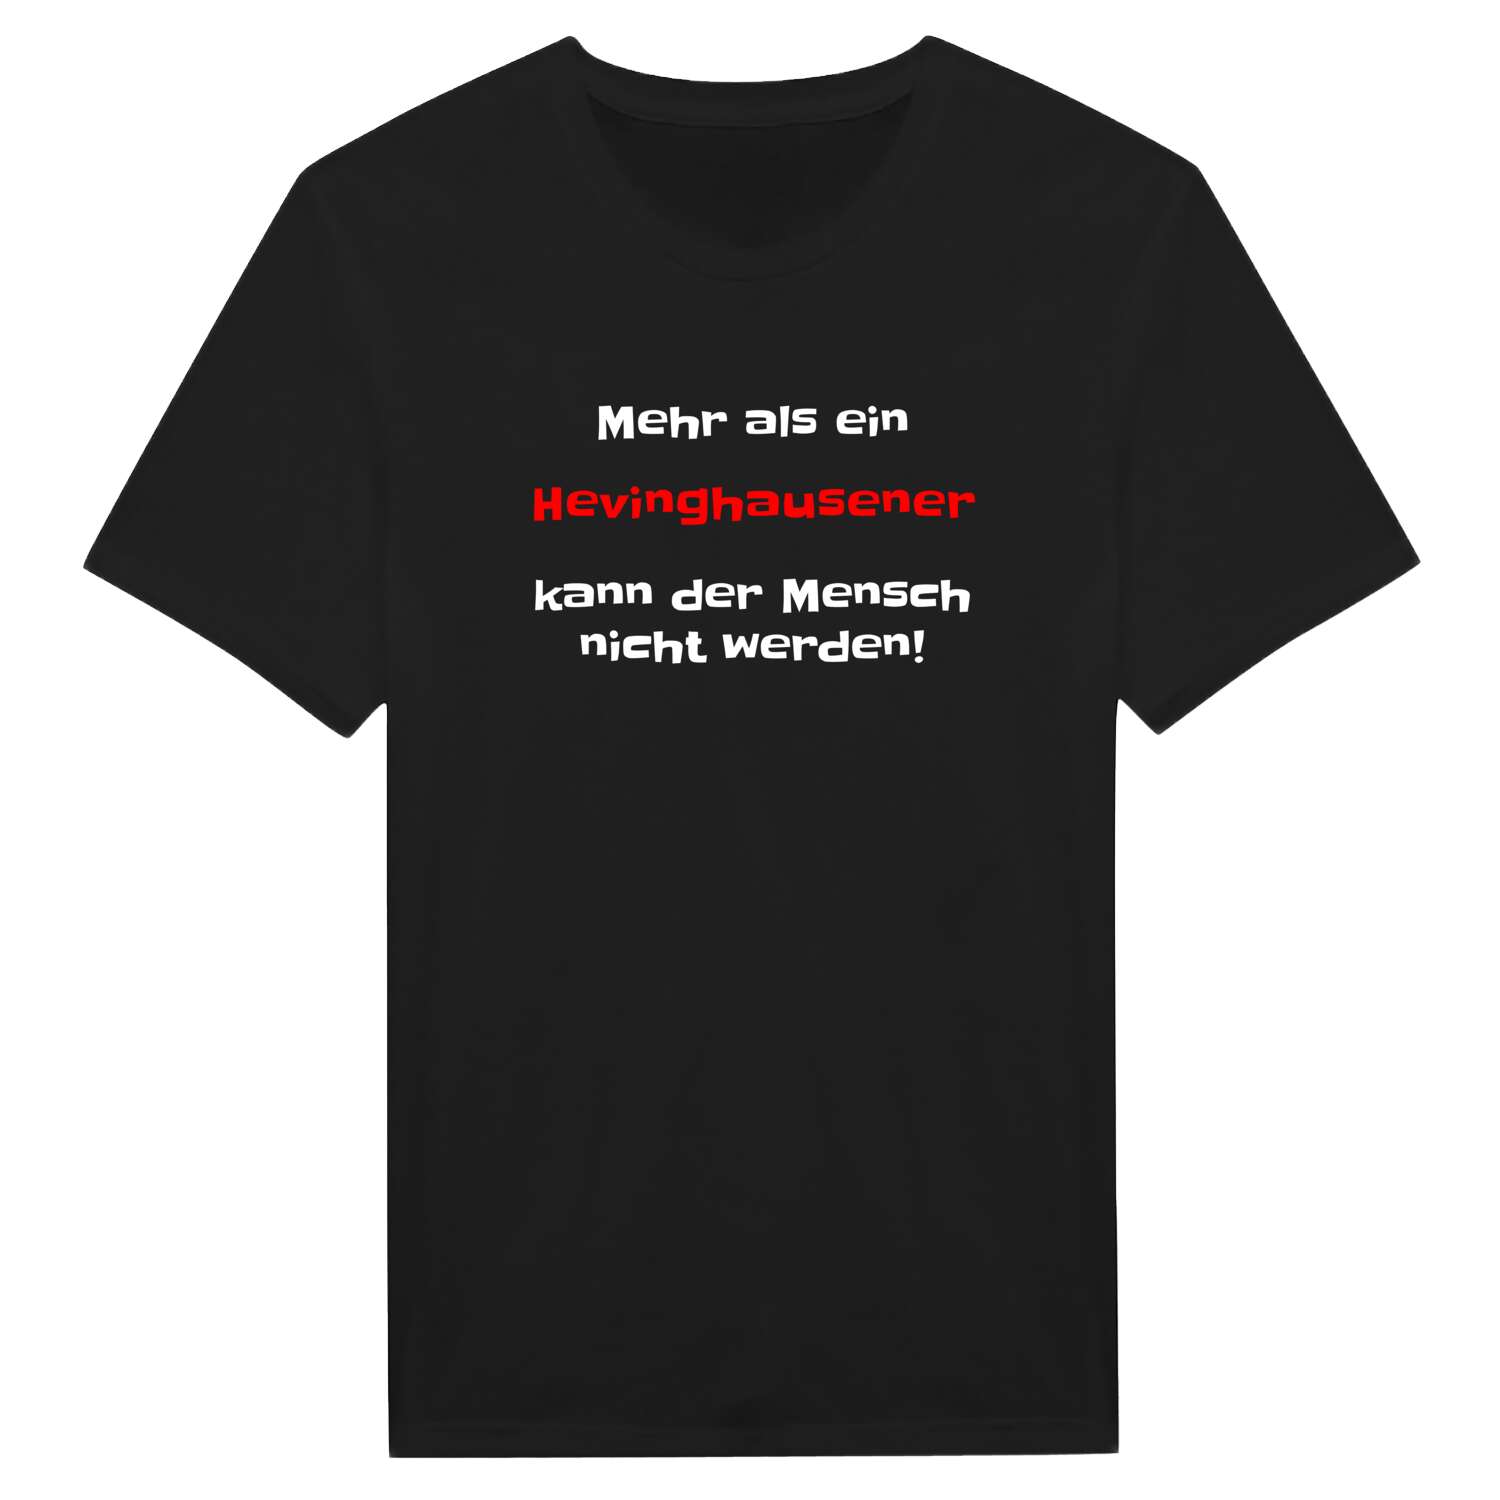 Hevinghausen T-Shirt »Mehr als ein«